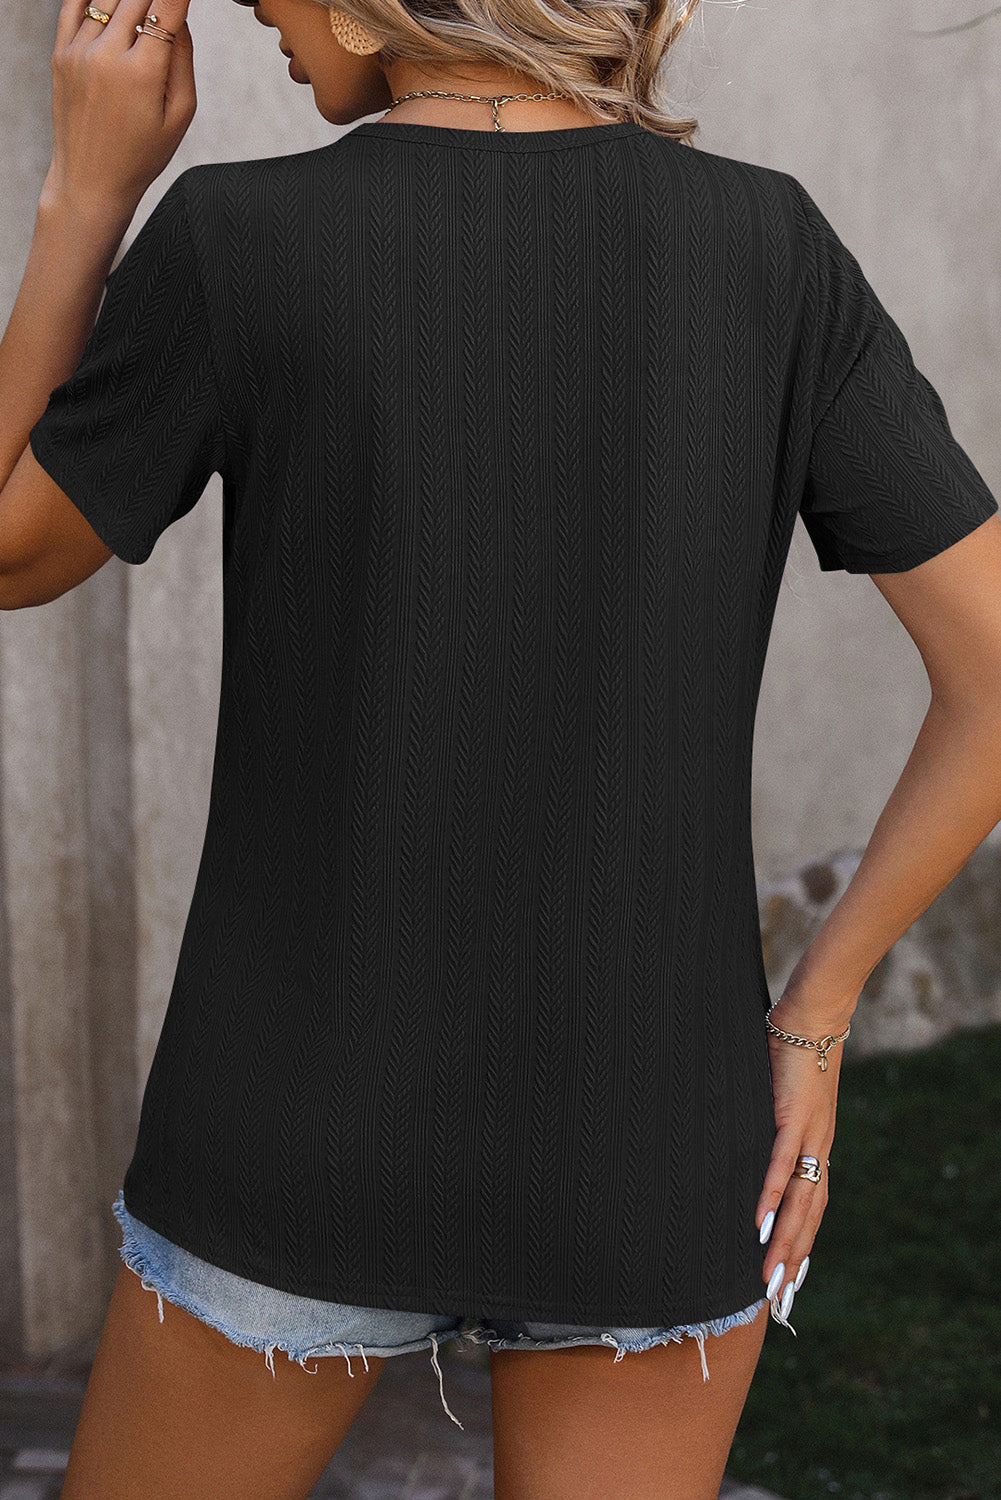 Schwarzes, strukturiertes T-Shirt mit Knöpfen und Schlitzdetail